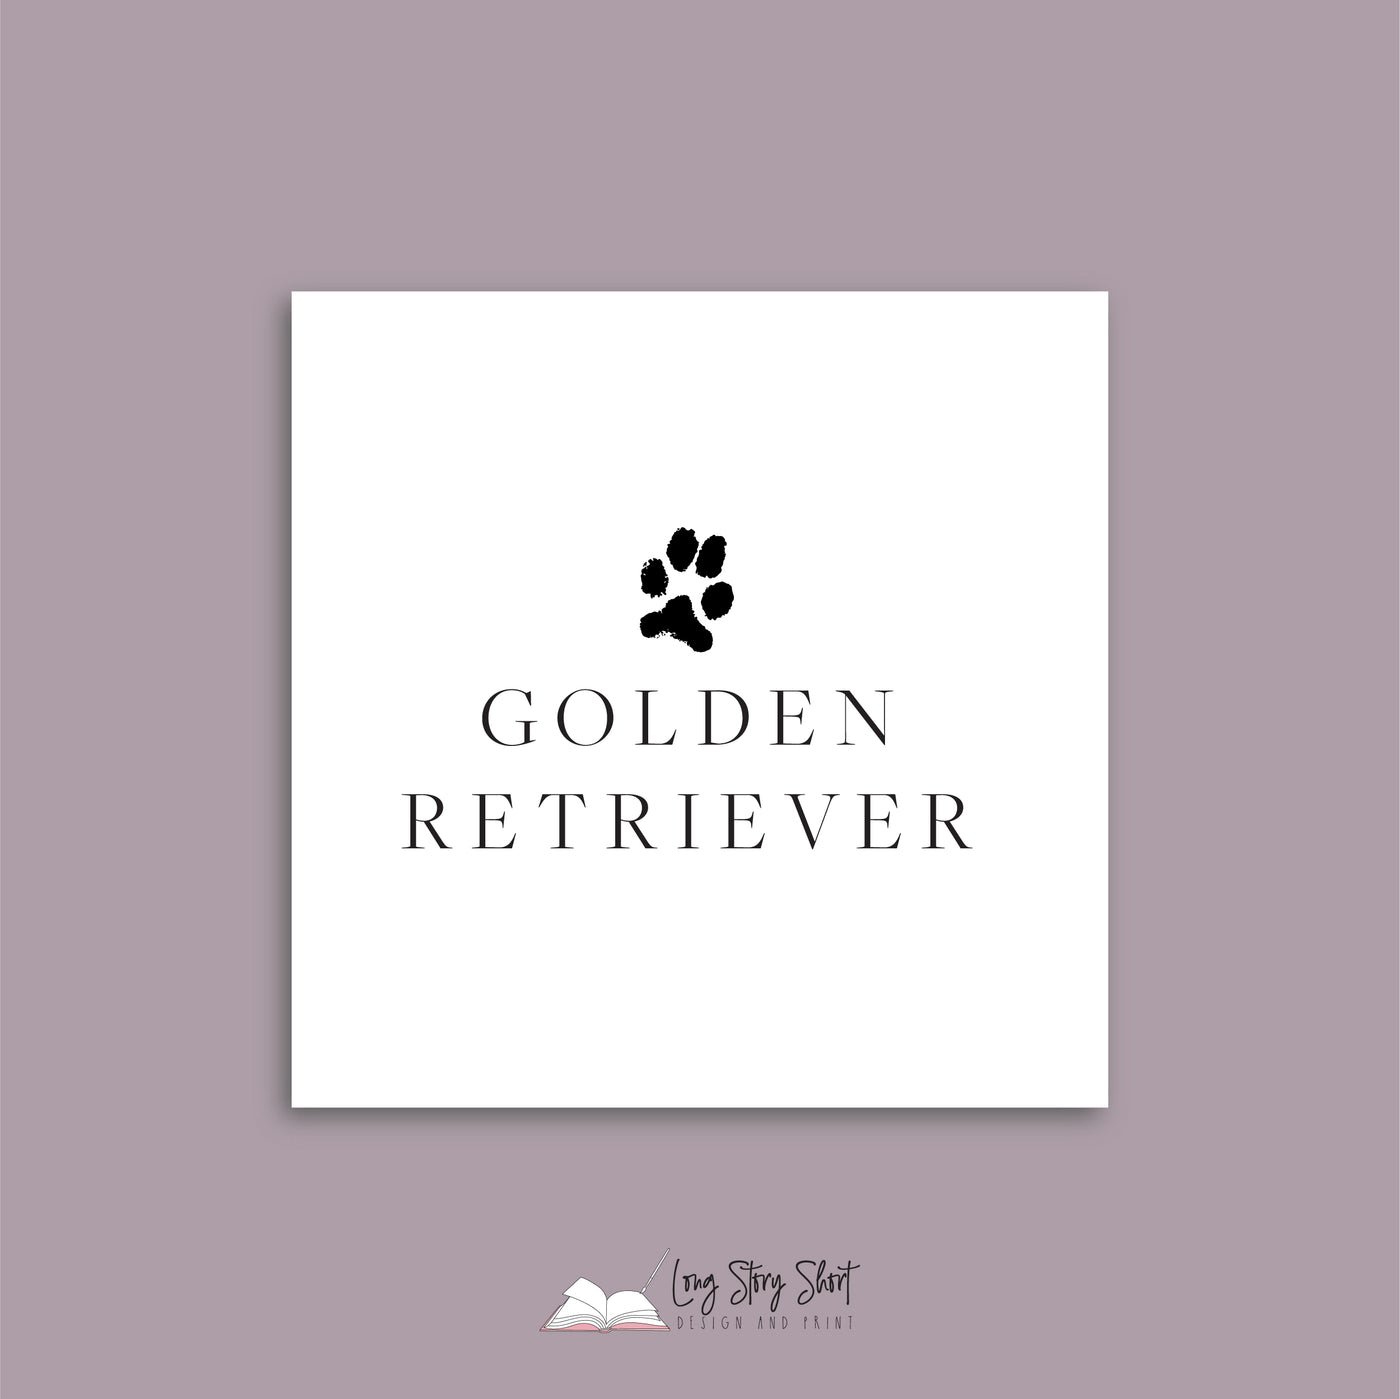 It's a Dog's Life (Golden Retriever v2) Vinyl Label Pack